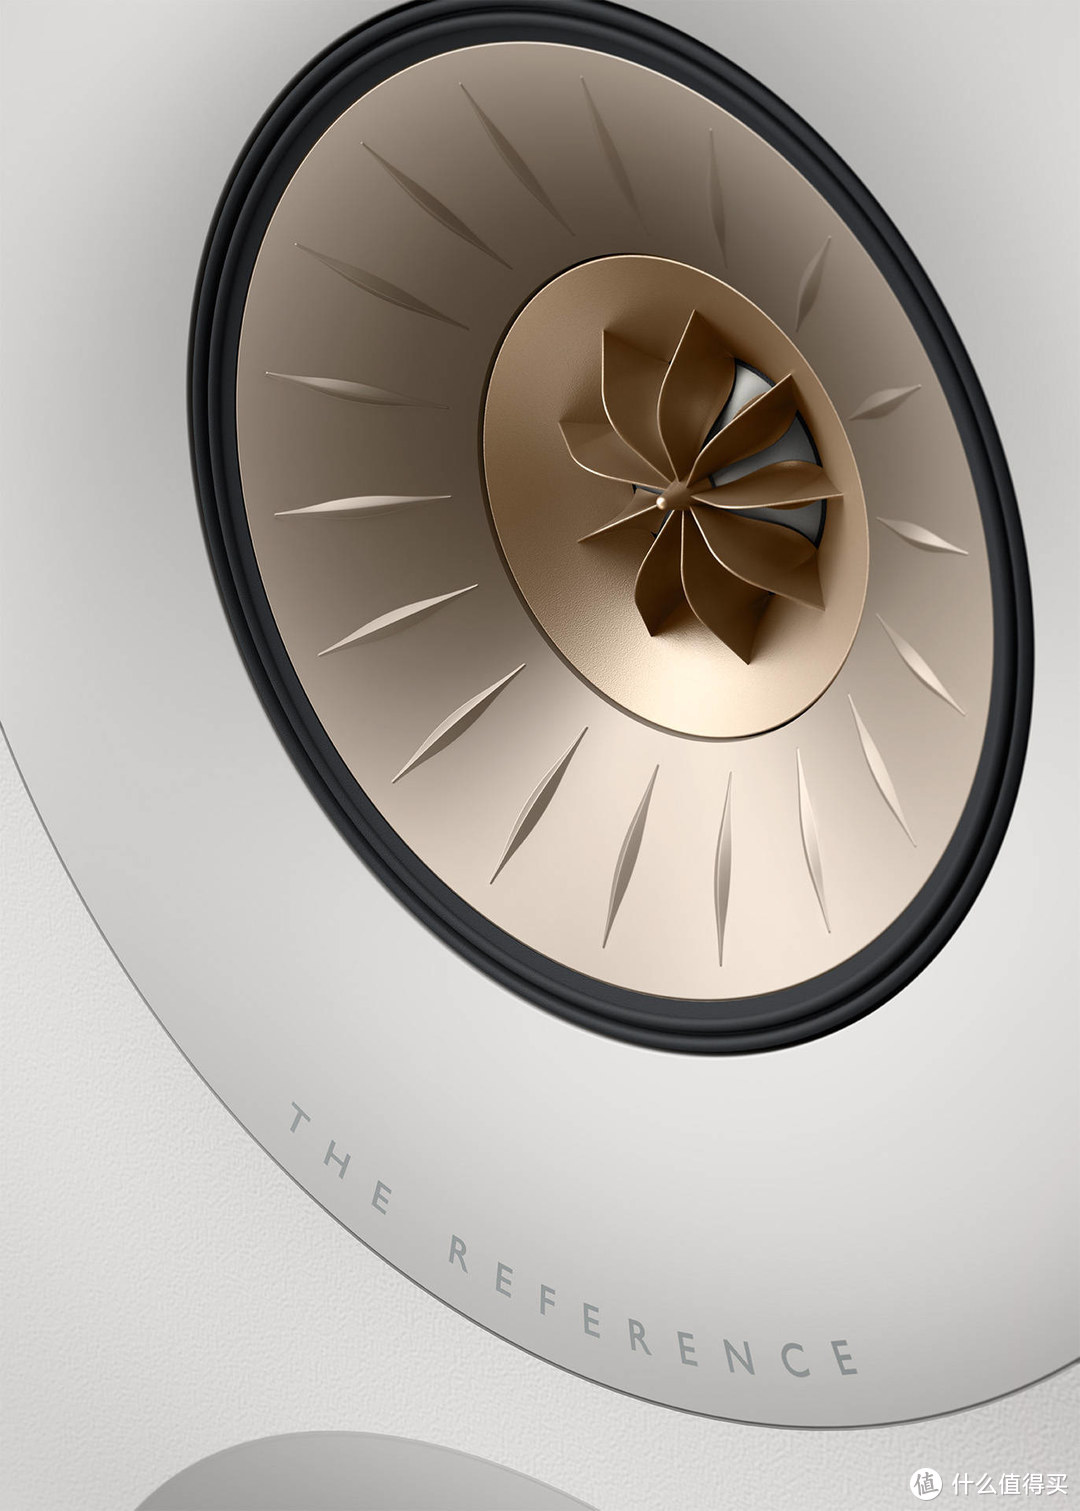 KEF 发布新款“BLADE”旗舰落地式扬声器和开创性“REFERENCE”扬声器